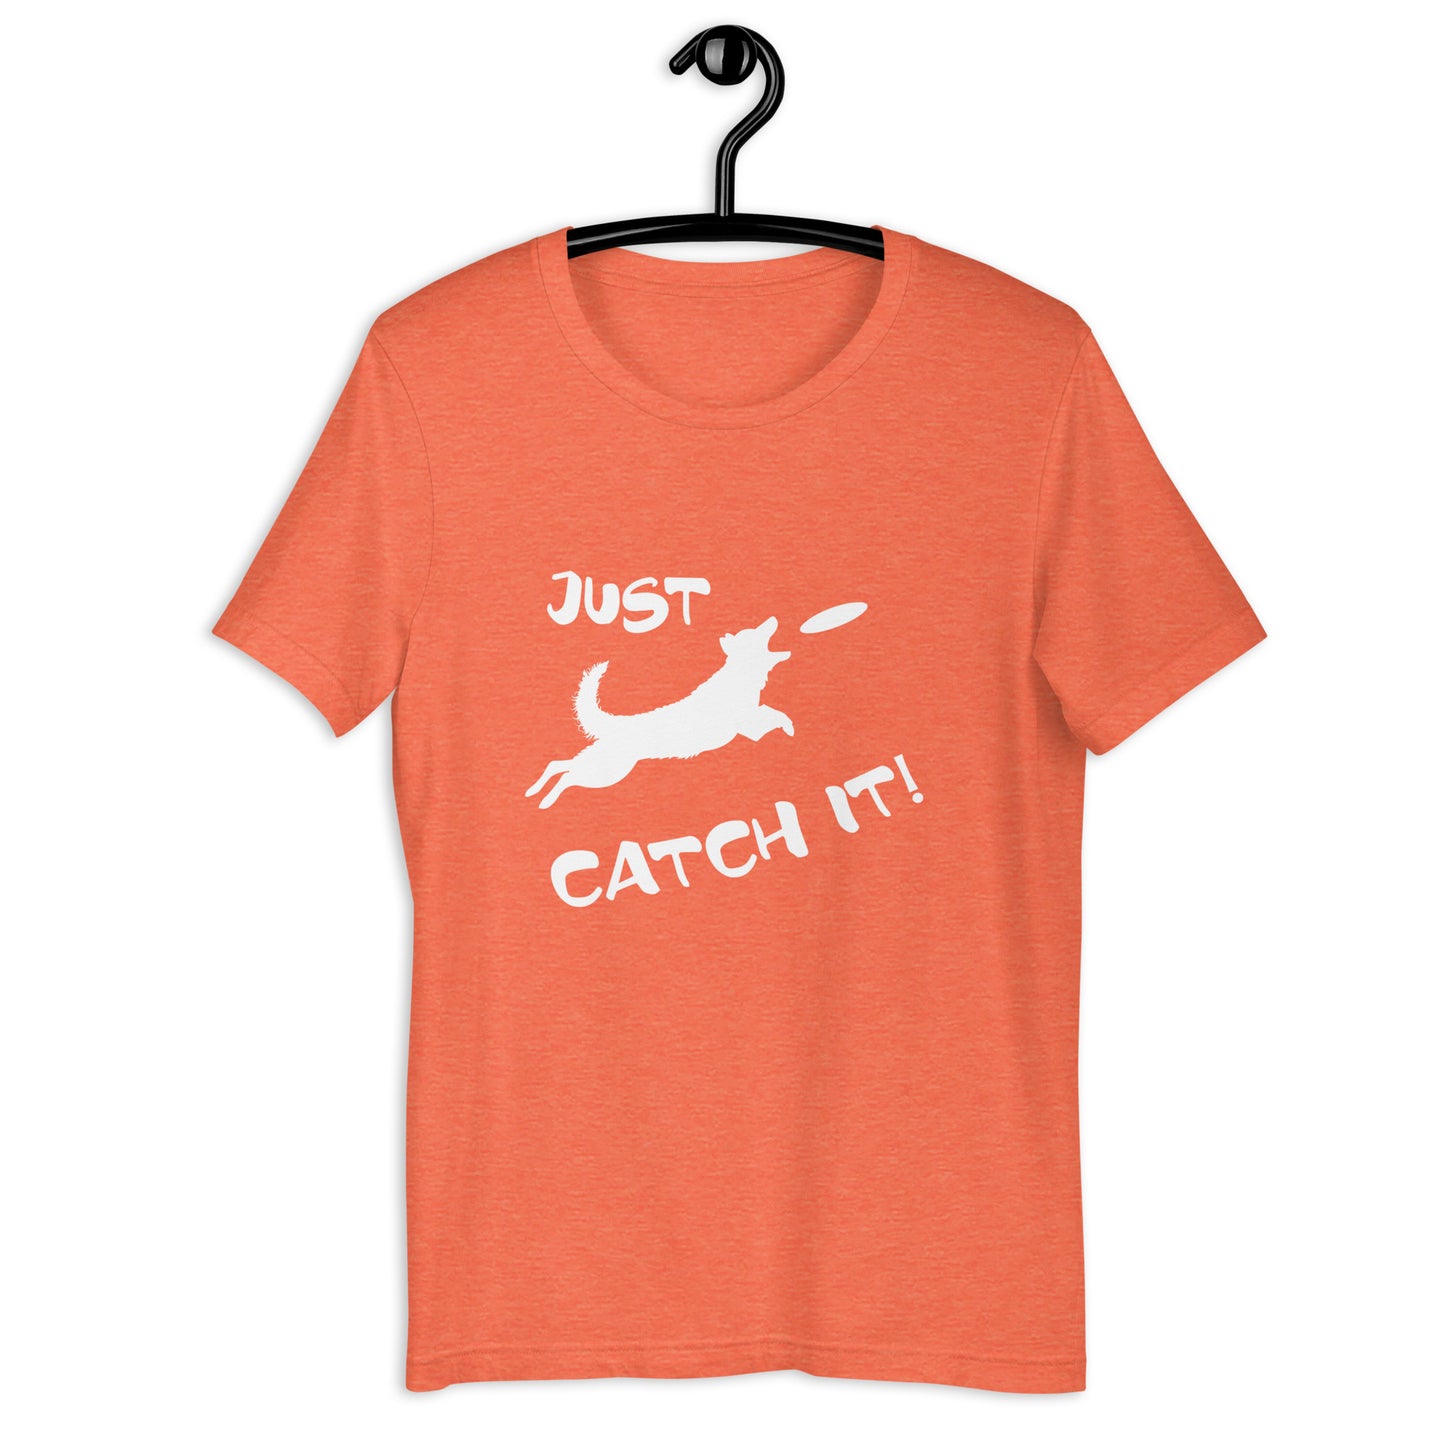 MUDI - JUST CATCH IT - Unisex t-shirt